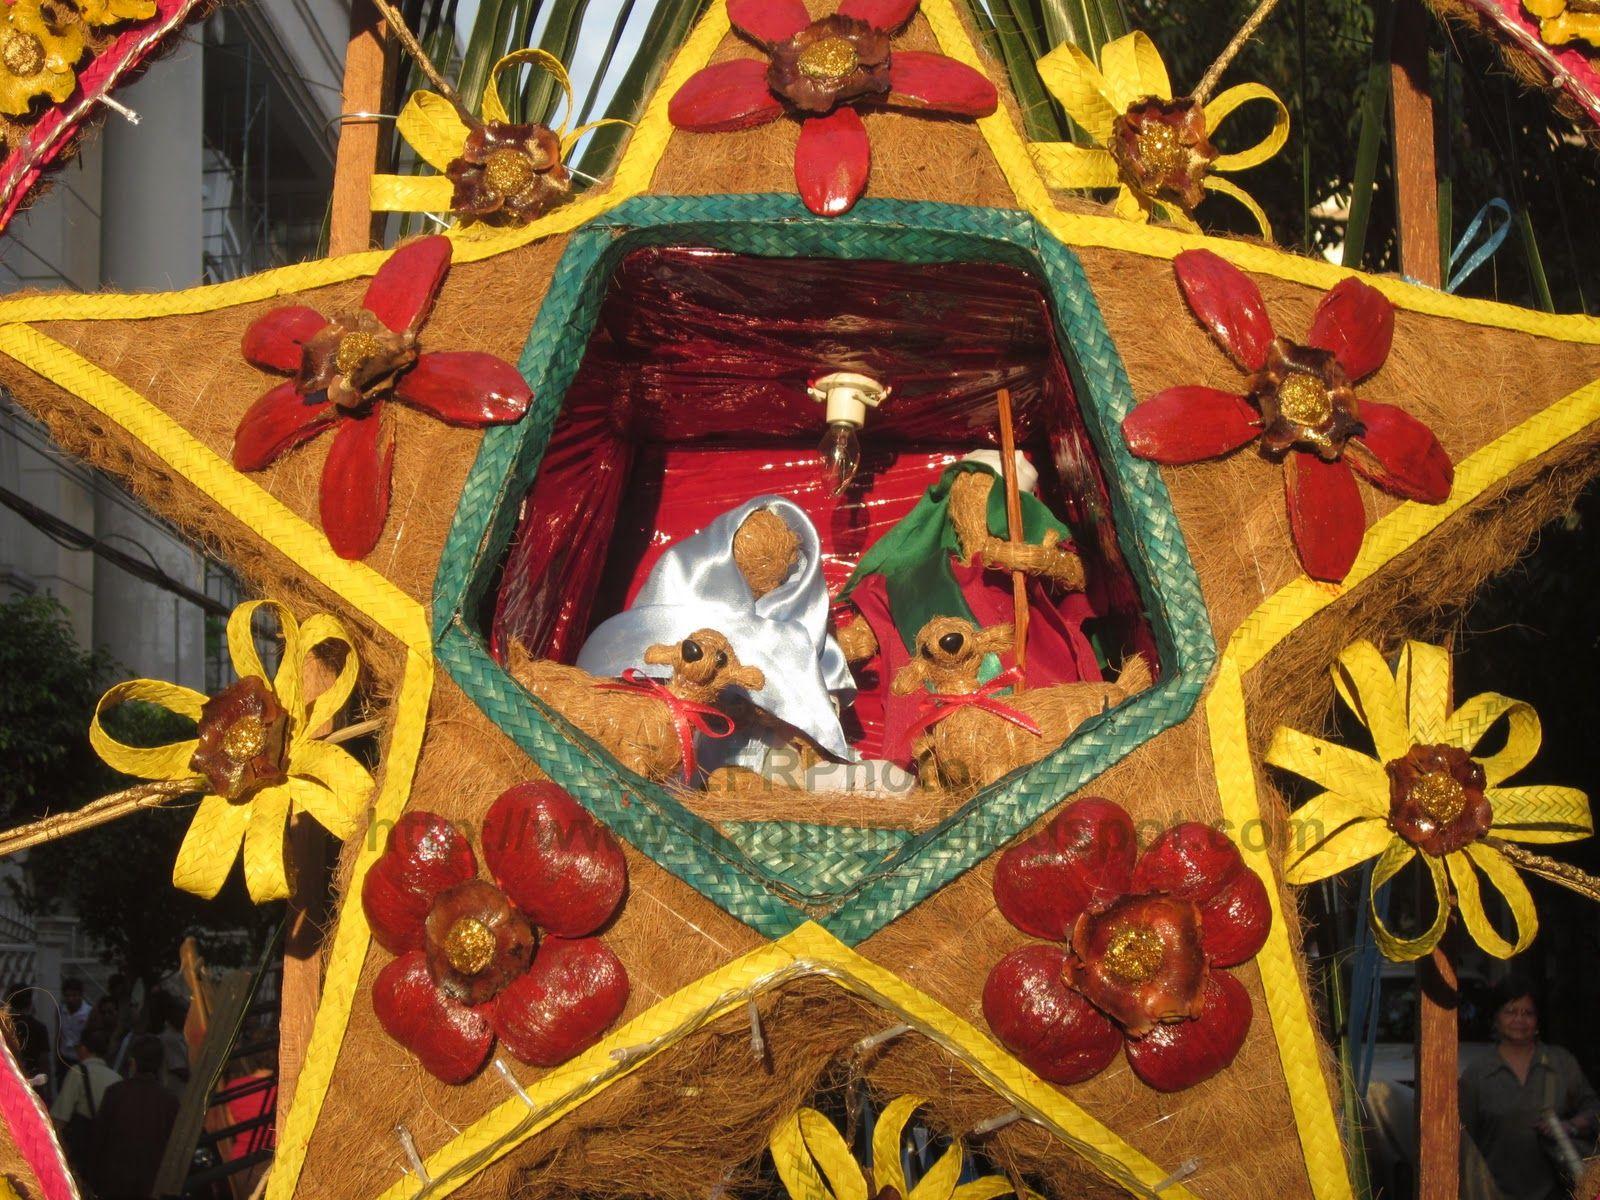 Naquem.: A Philippine Christmas tradition-Misa de Aguinaldo then